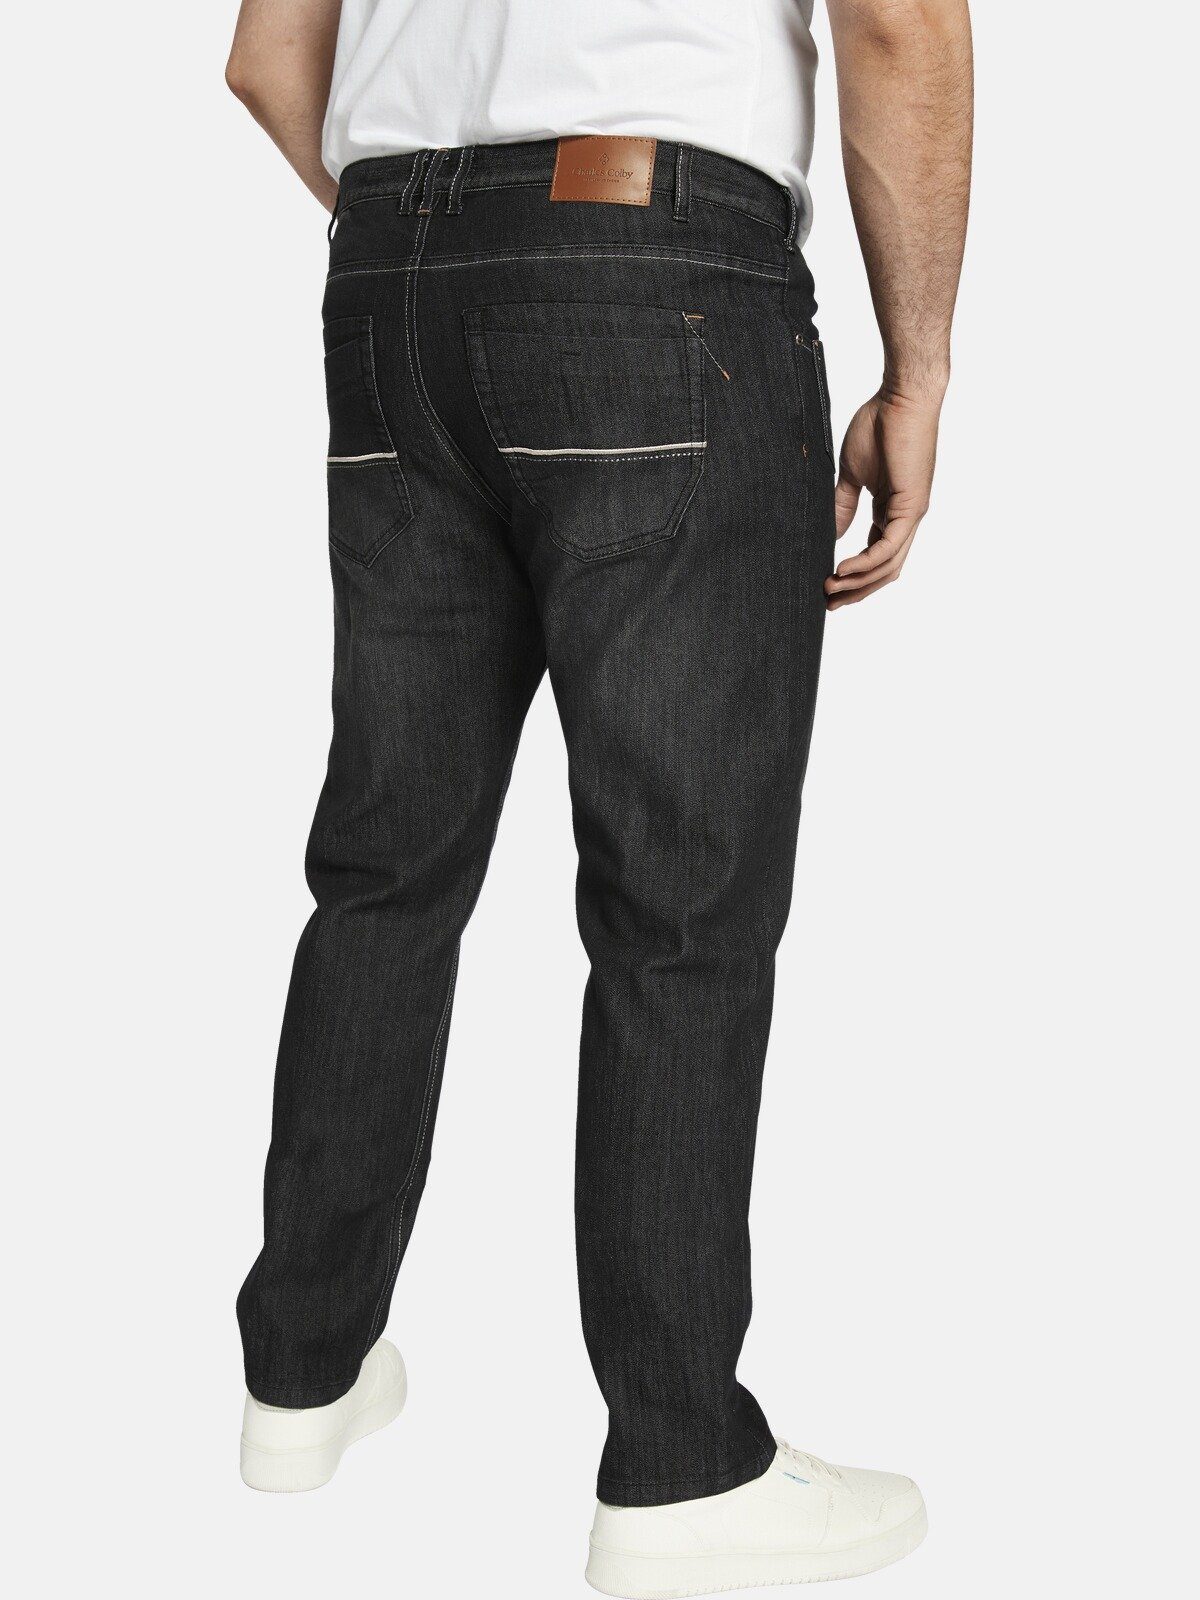 CASSANDER, Charles Five-Pocket-Design schwarz 5-Pocket-Jeans Colby BARON